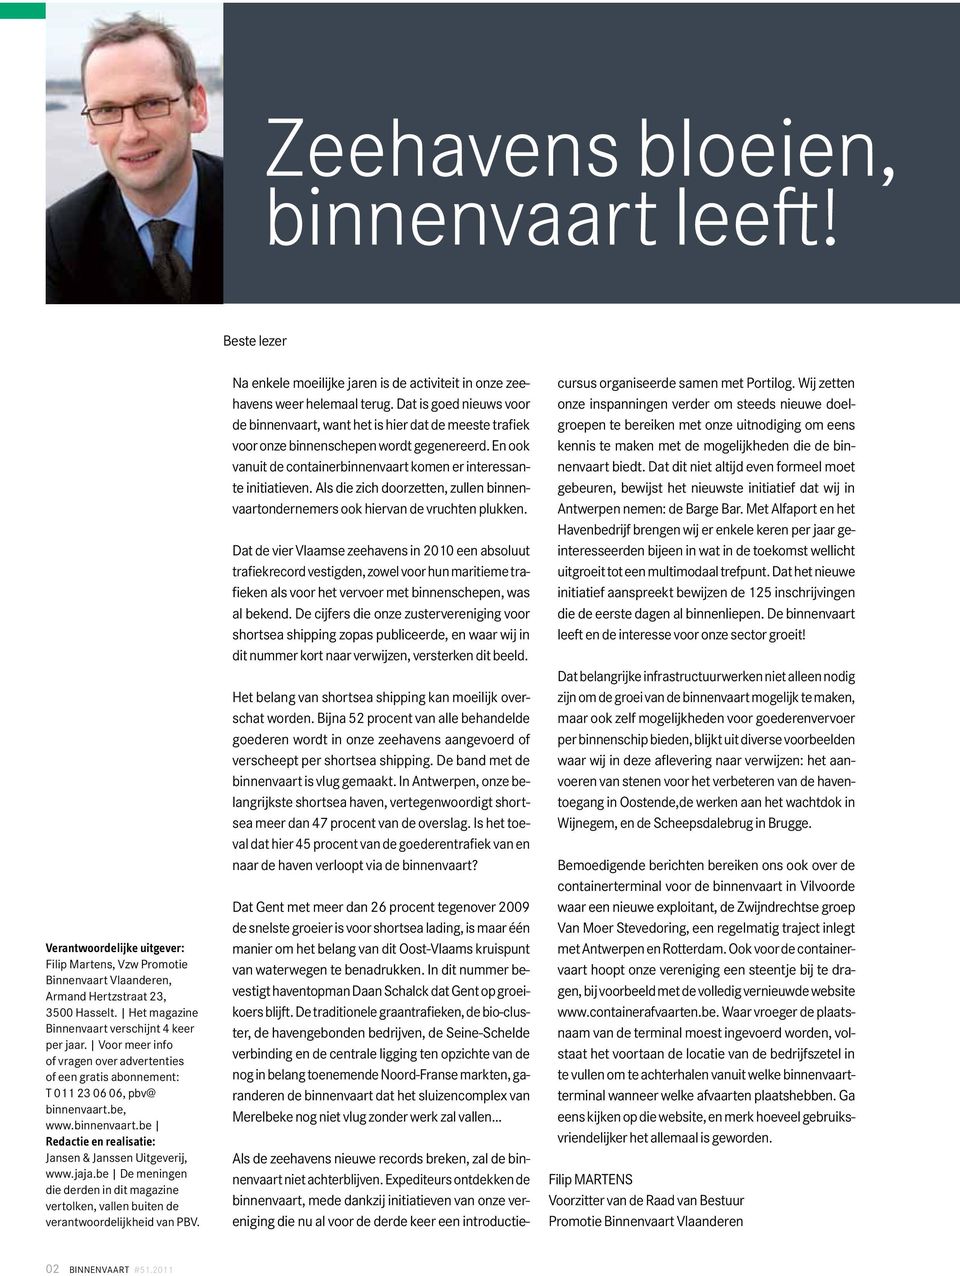 be, www.binnenvaart.be Redactie en realisatie: Jansen & Janssen Uitgeverij, www.jaja.be De meningen die derden in dit magazine vertolken, vallen buiten de verantwoordelijkheid van PBV.